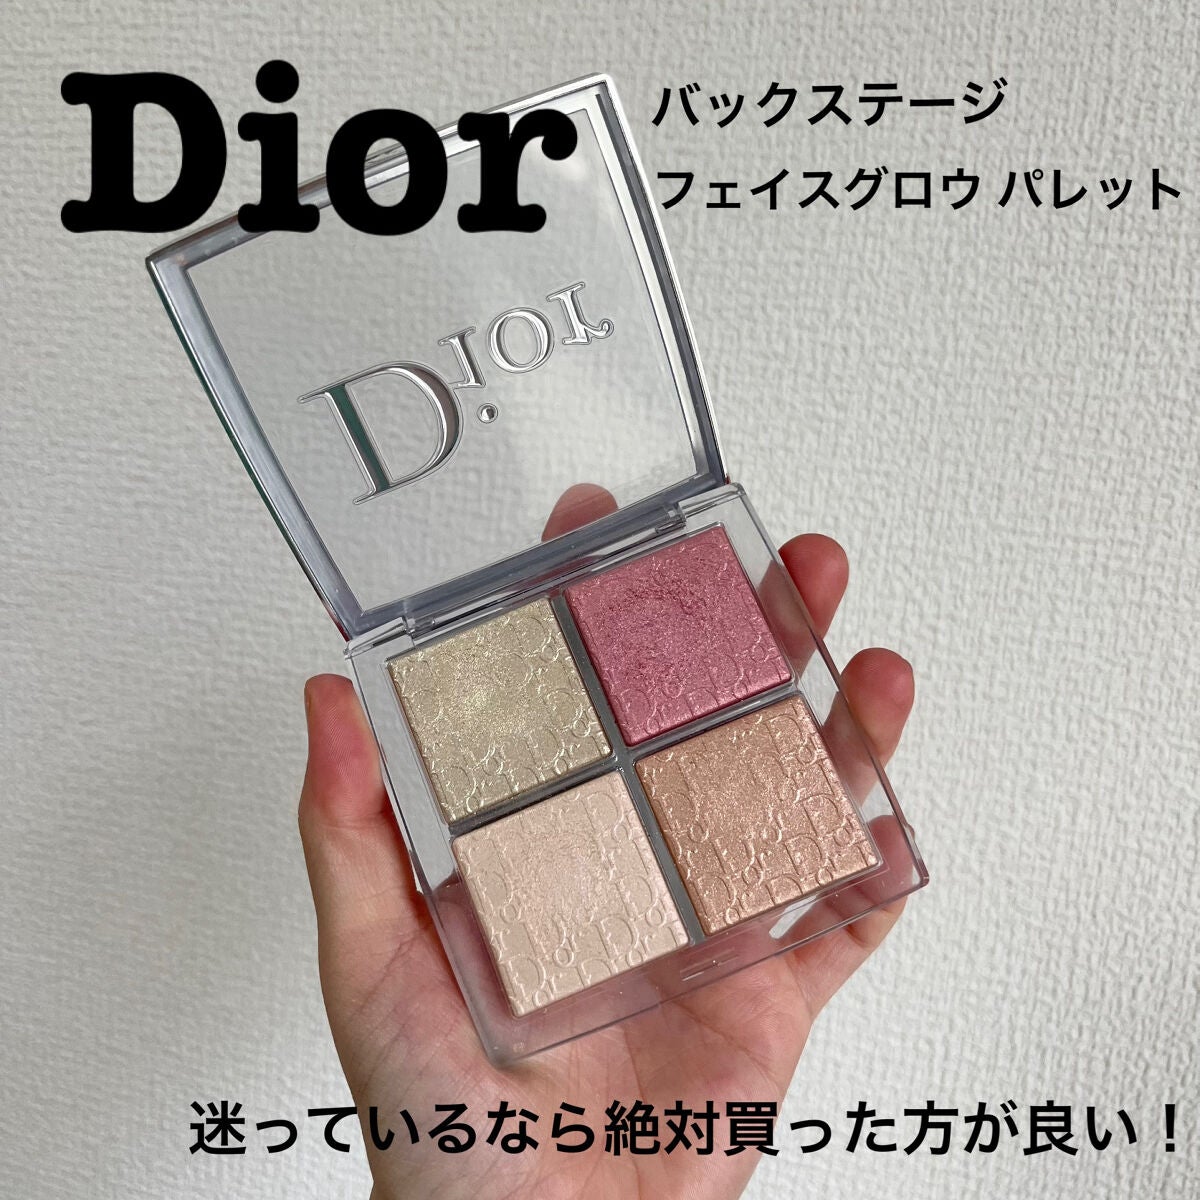 Dior 4色ハイライター